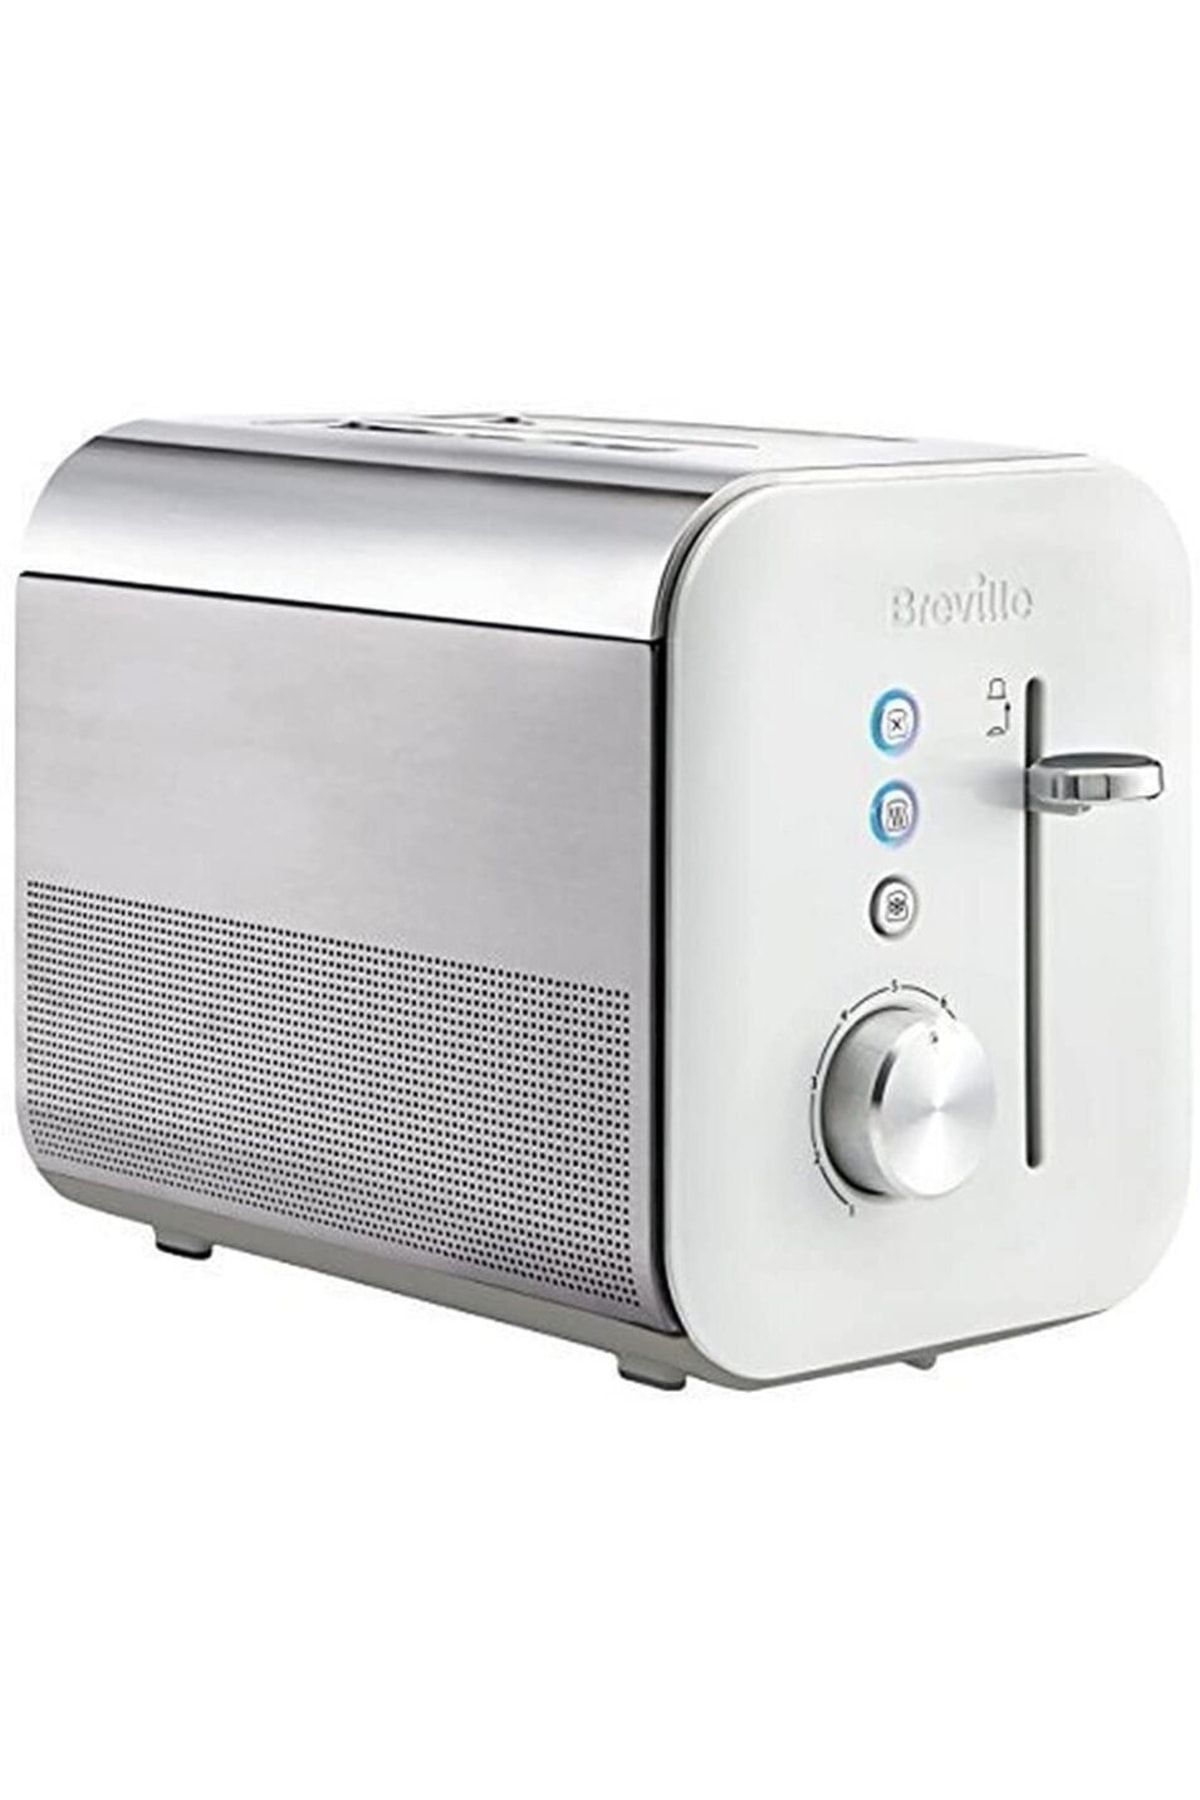 Breville Vtt676 2 Dilimli Ekmek Kızartma Makinesi